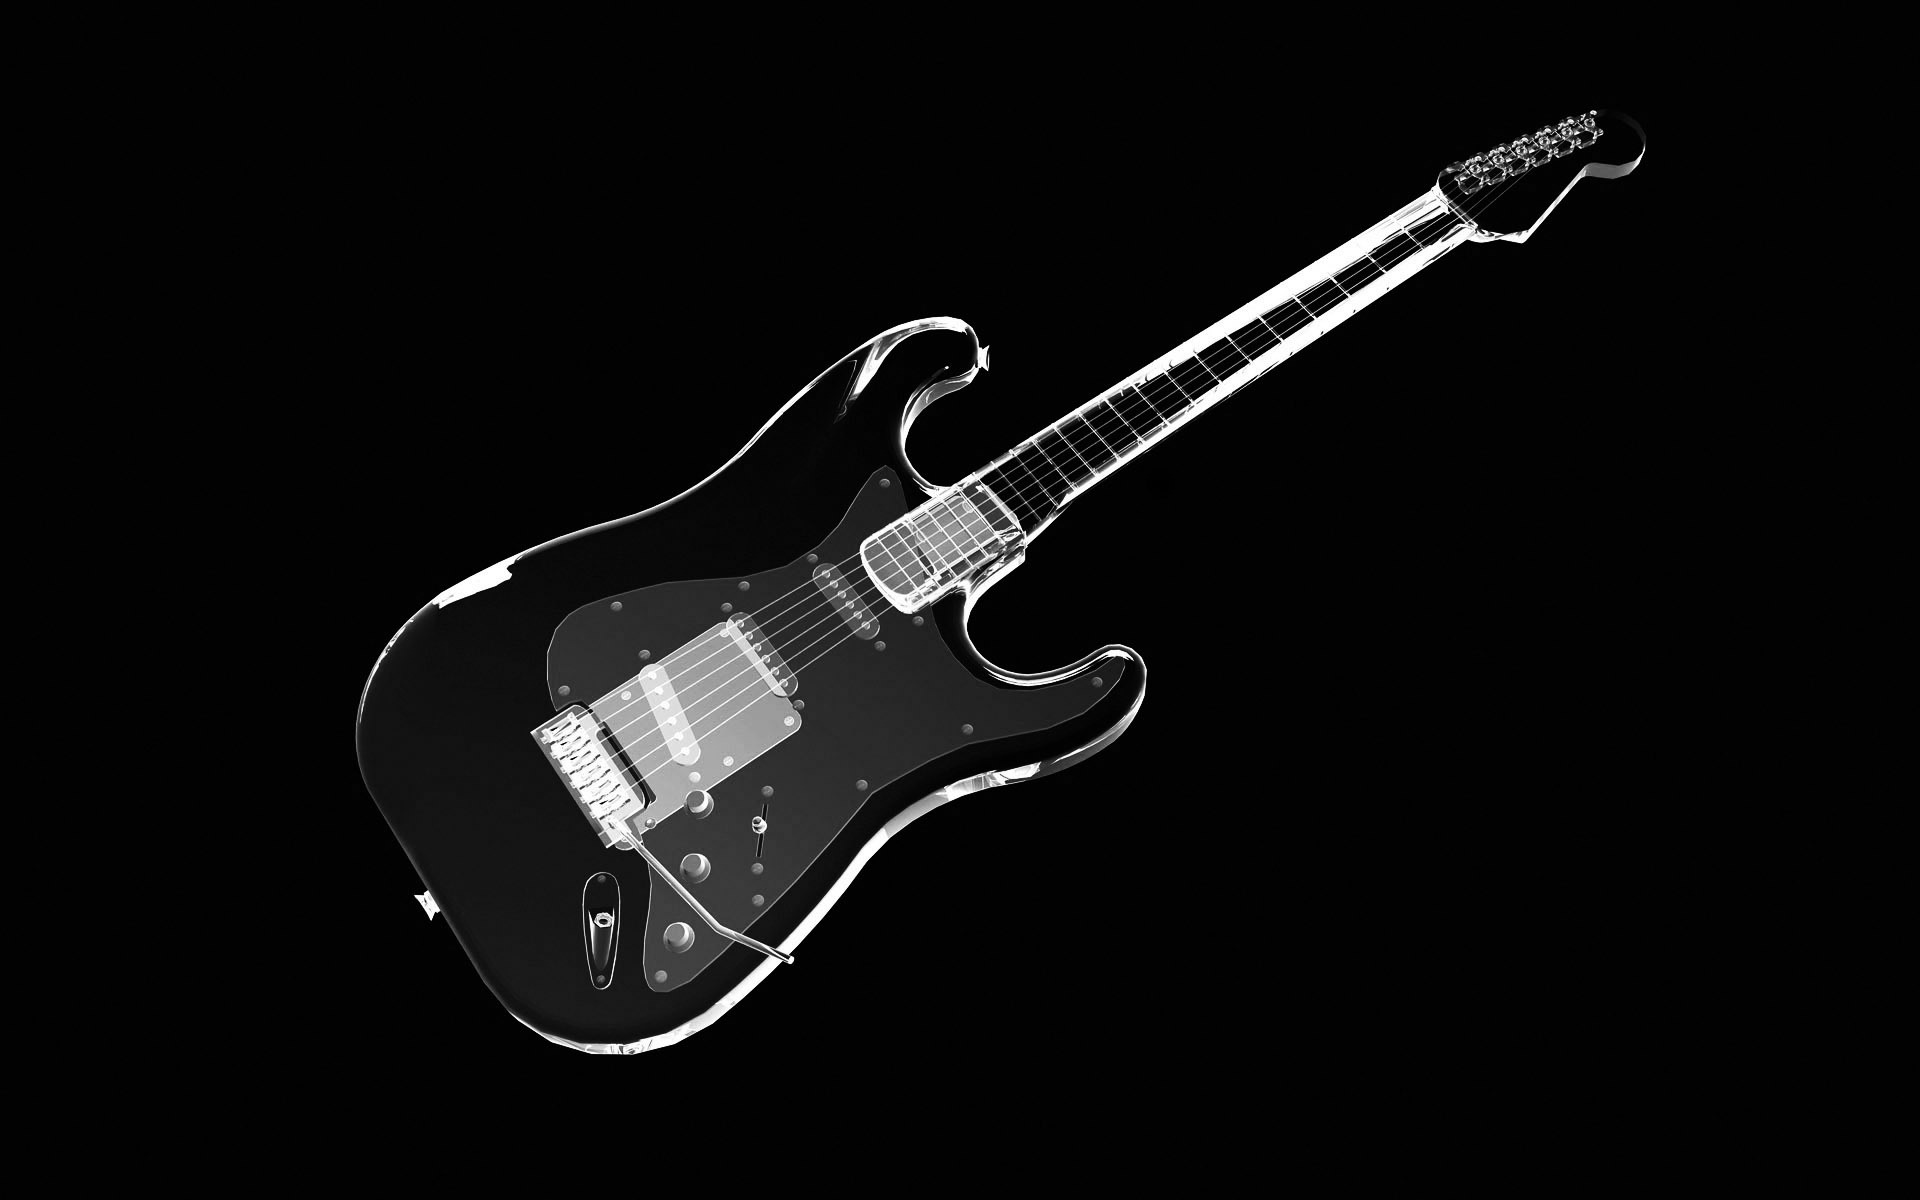 Guitar Black Wallpaper - Wallpaper, High Definition, High Quality,  Widescreen